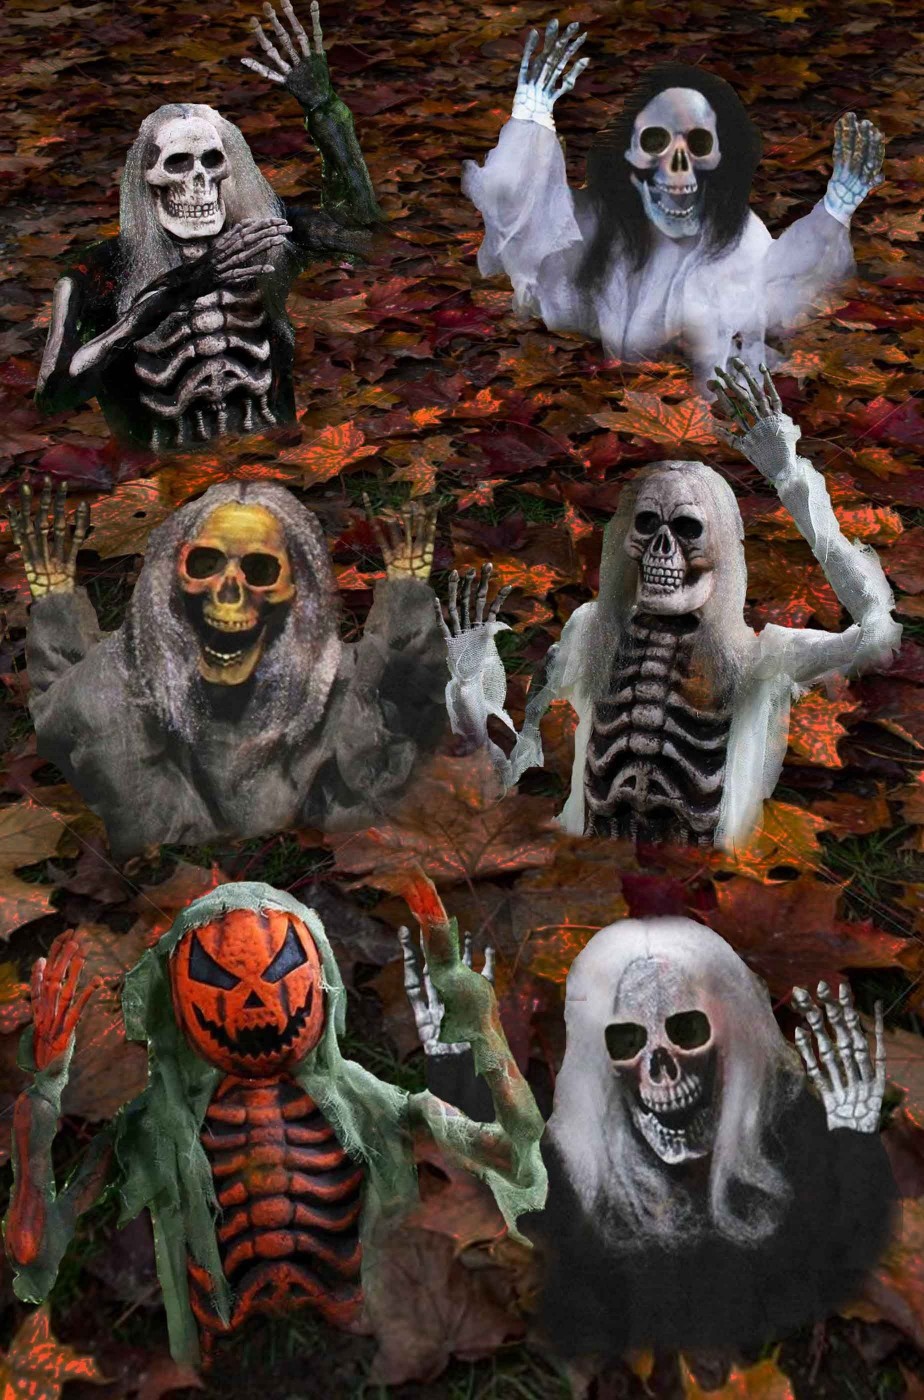 https://carnivalhalloween.com/14465-large_default/decorazioni-halloween-da-giardino-sei-scheletri-che-escono-dal-terreno.jpg